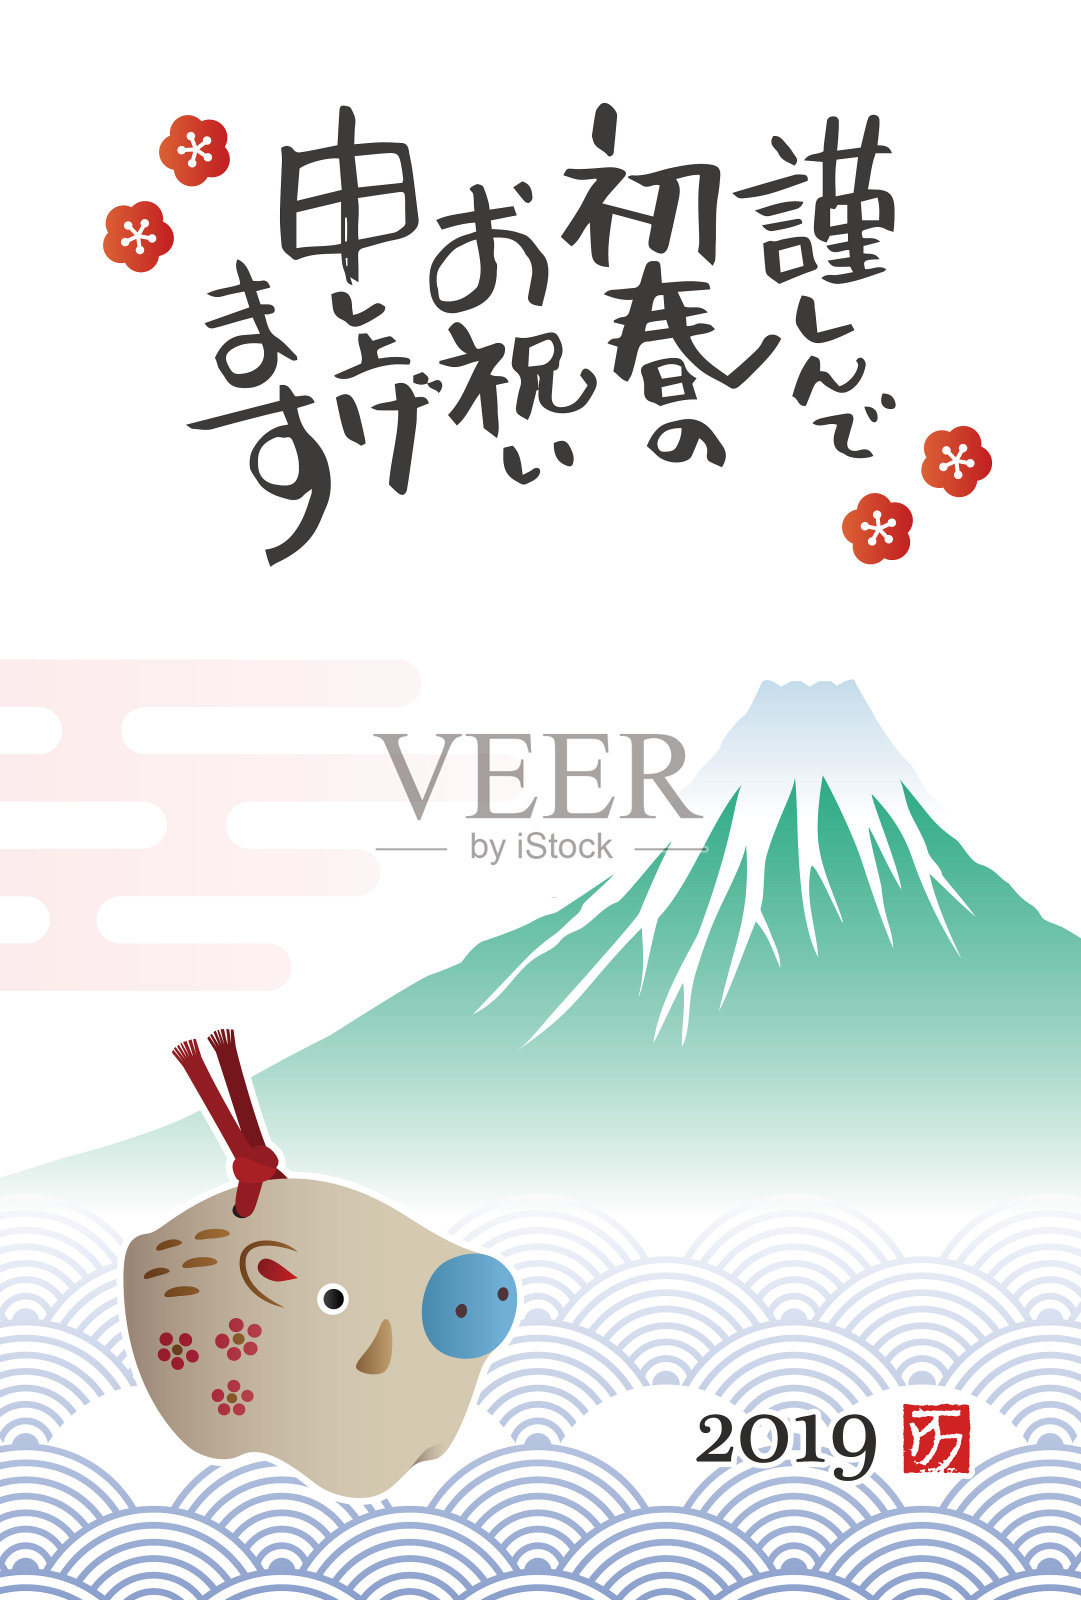 有野猪娃娃和富士山的贺年卡设计模板素材